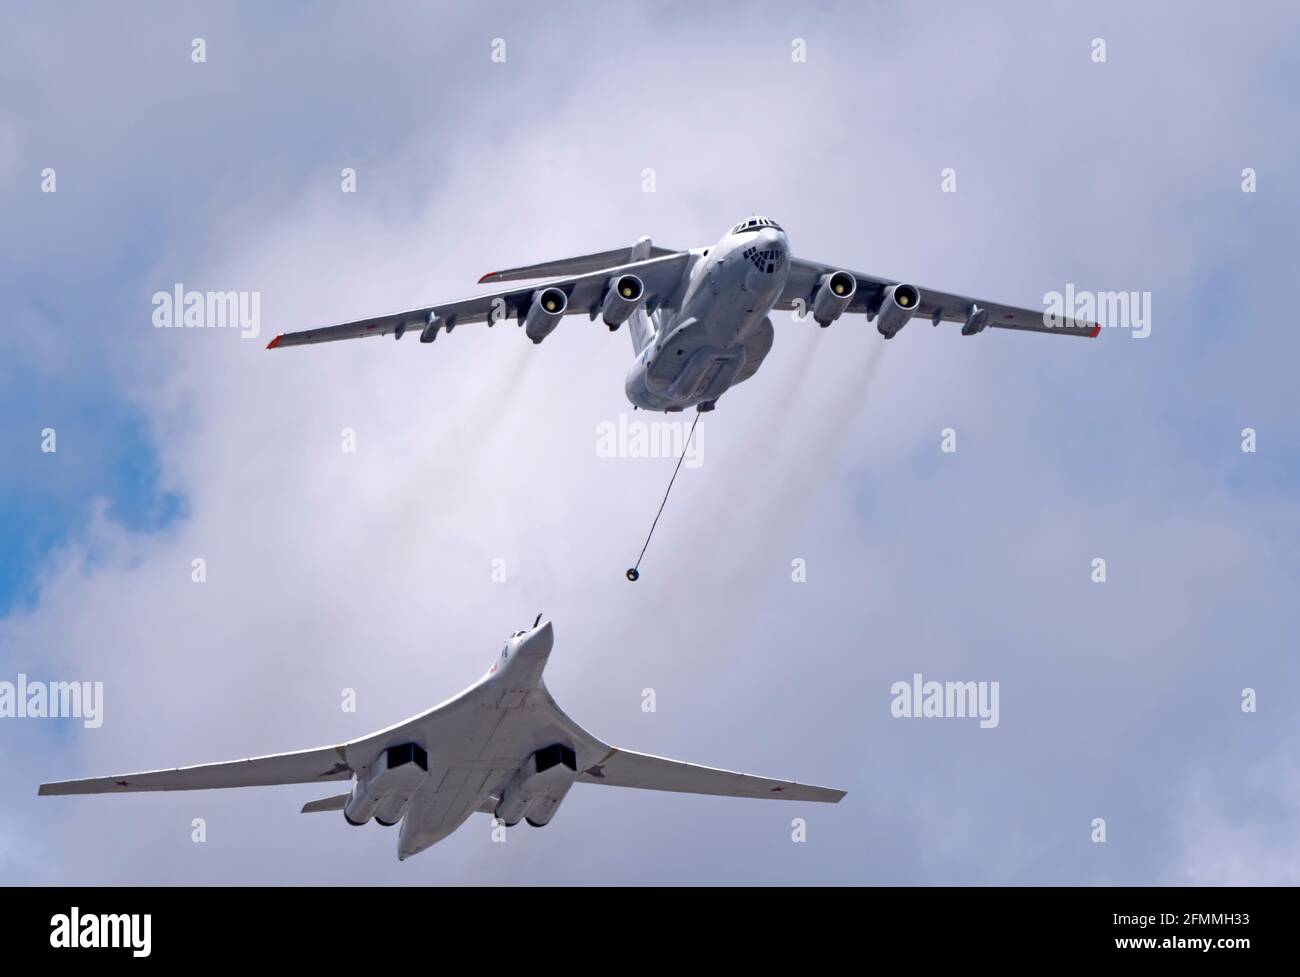 MOSCÚ, RUSIA - 7 DE MAYO de 2021: Desfile de Avia en Moscú. El buque tanque Ilyushin Il-78 y la plataforma estratégica de bombarderos y misiles Tu-160 en el cielo en el desfile de VI Foto de stock